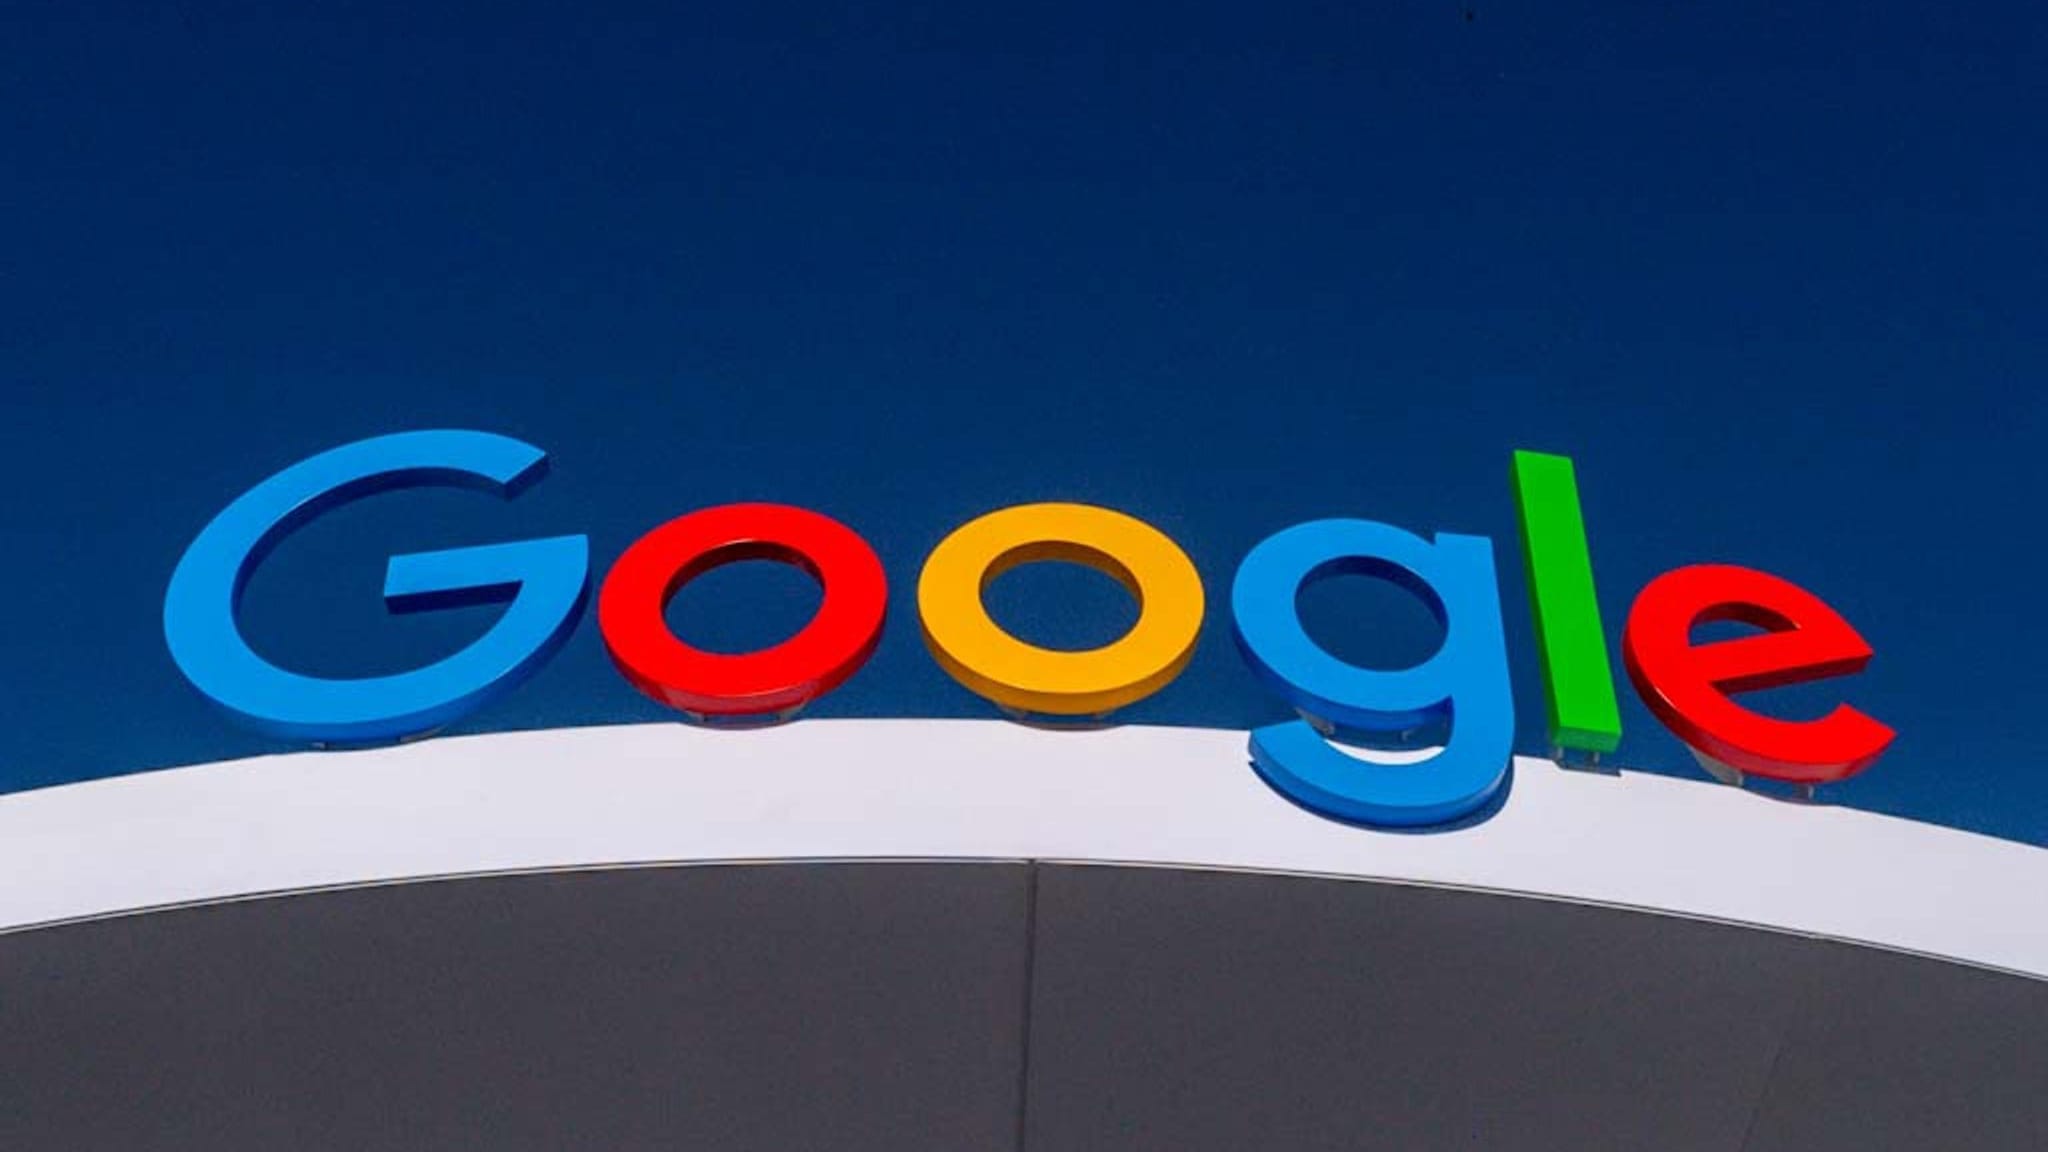 Google-Mutter Alphabet steigert Umsatz und Gewinn deutlich